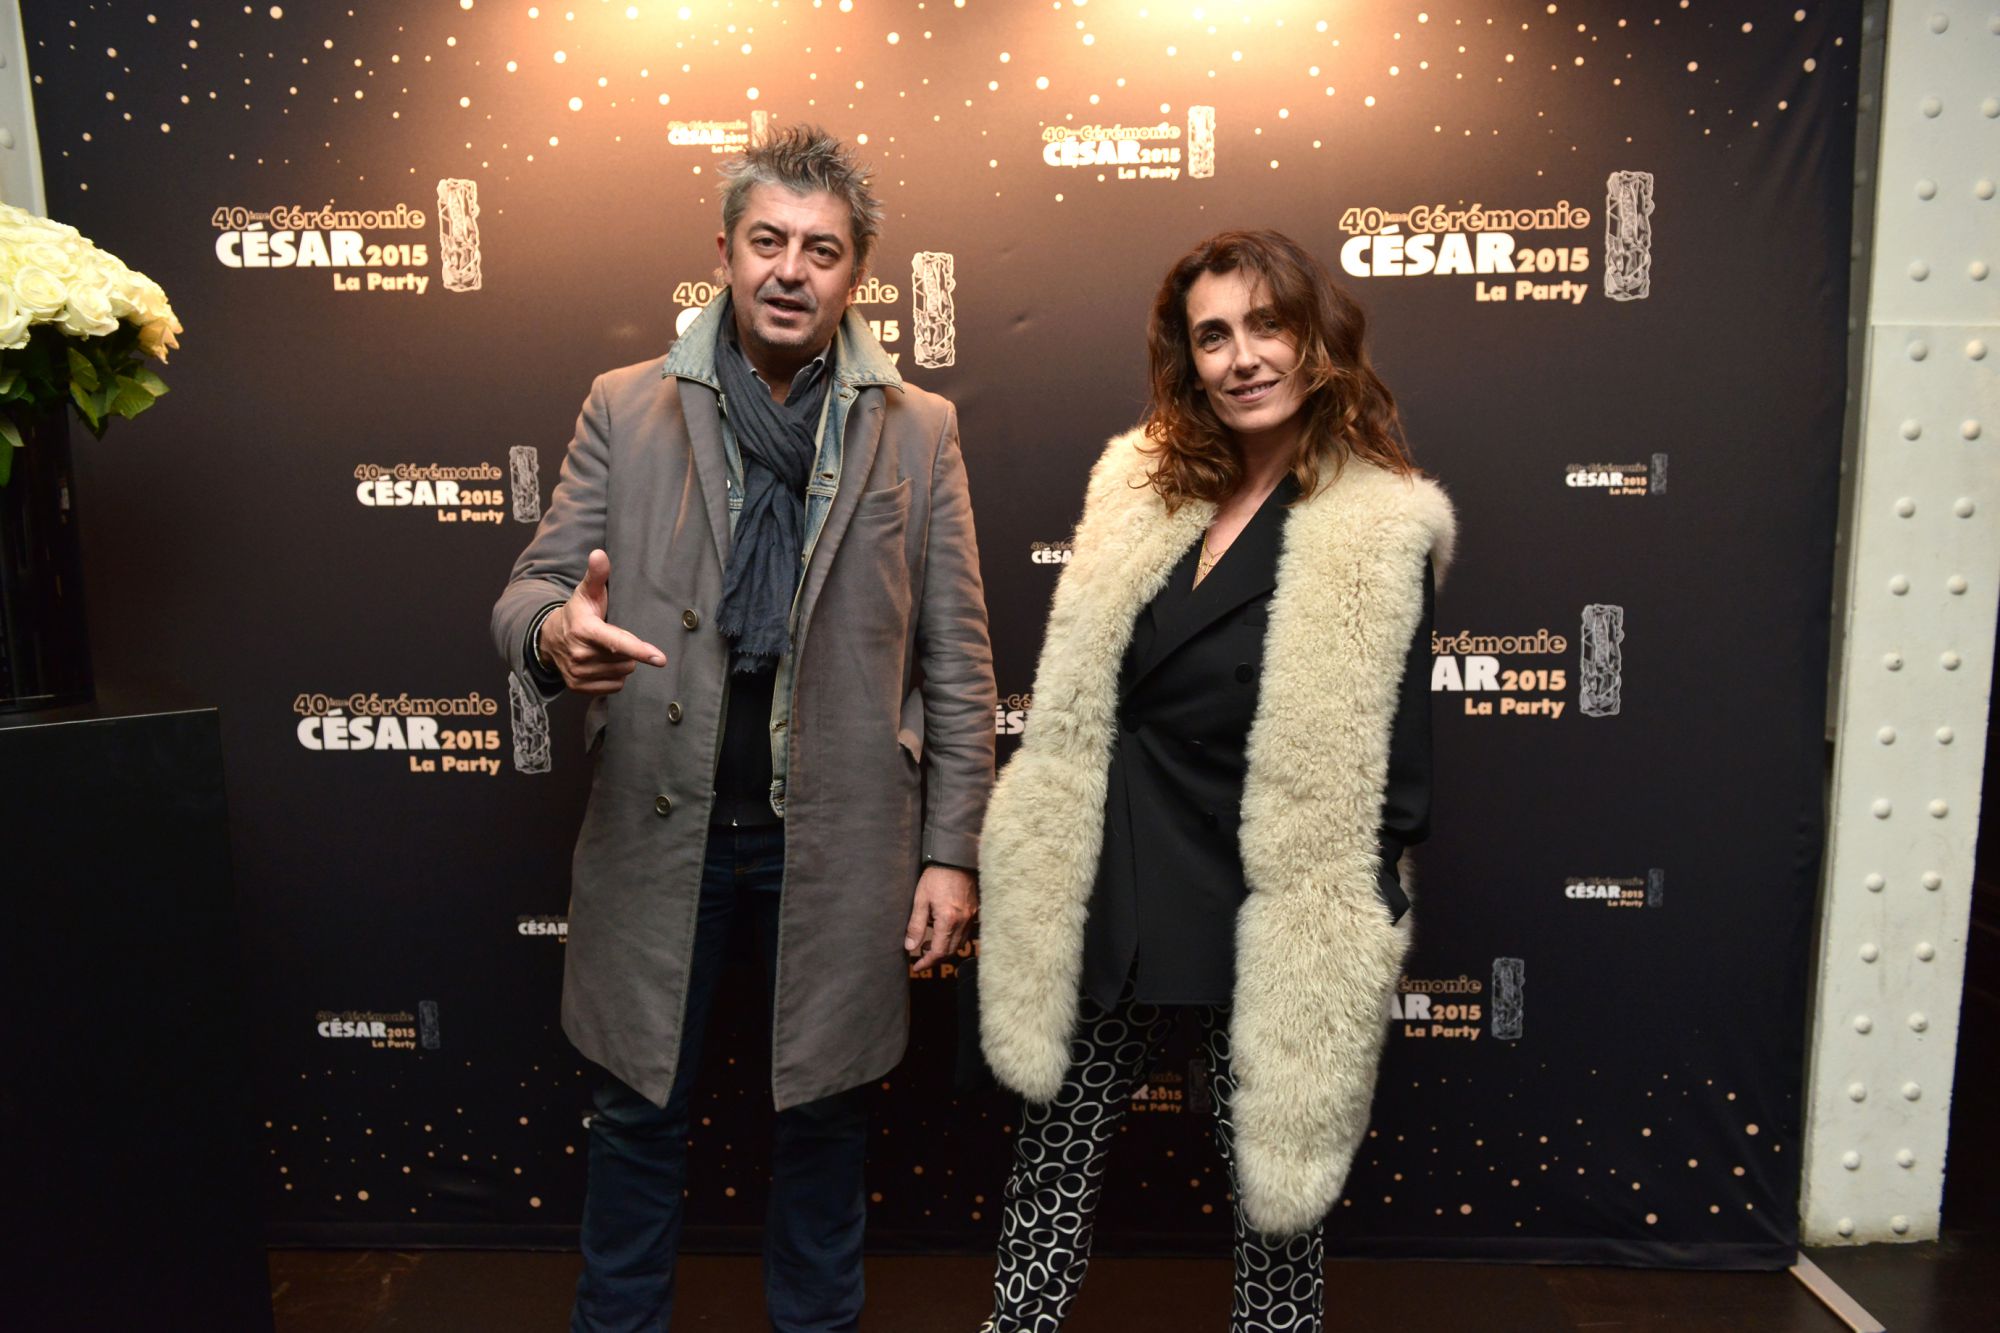 La Party des César 2015 au VIP Room, organisée par Albane Cleret - Photo 14 (Mademoiselle Agnès)